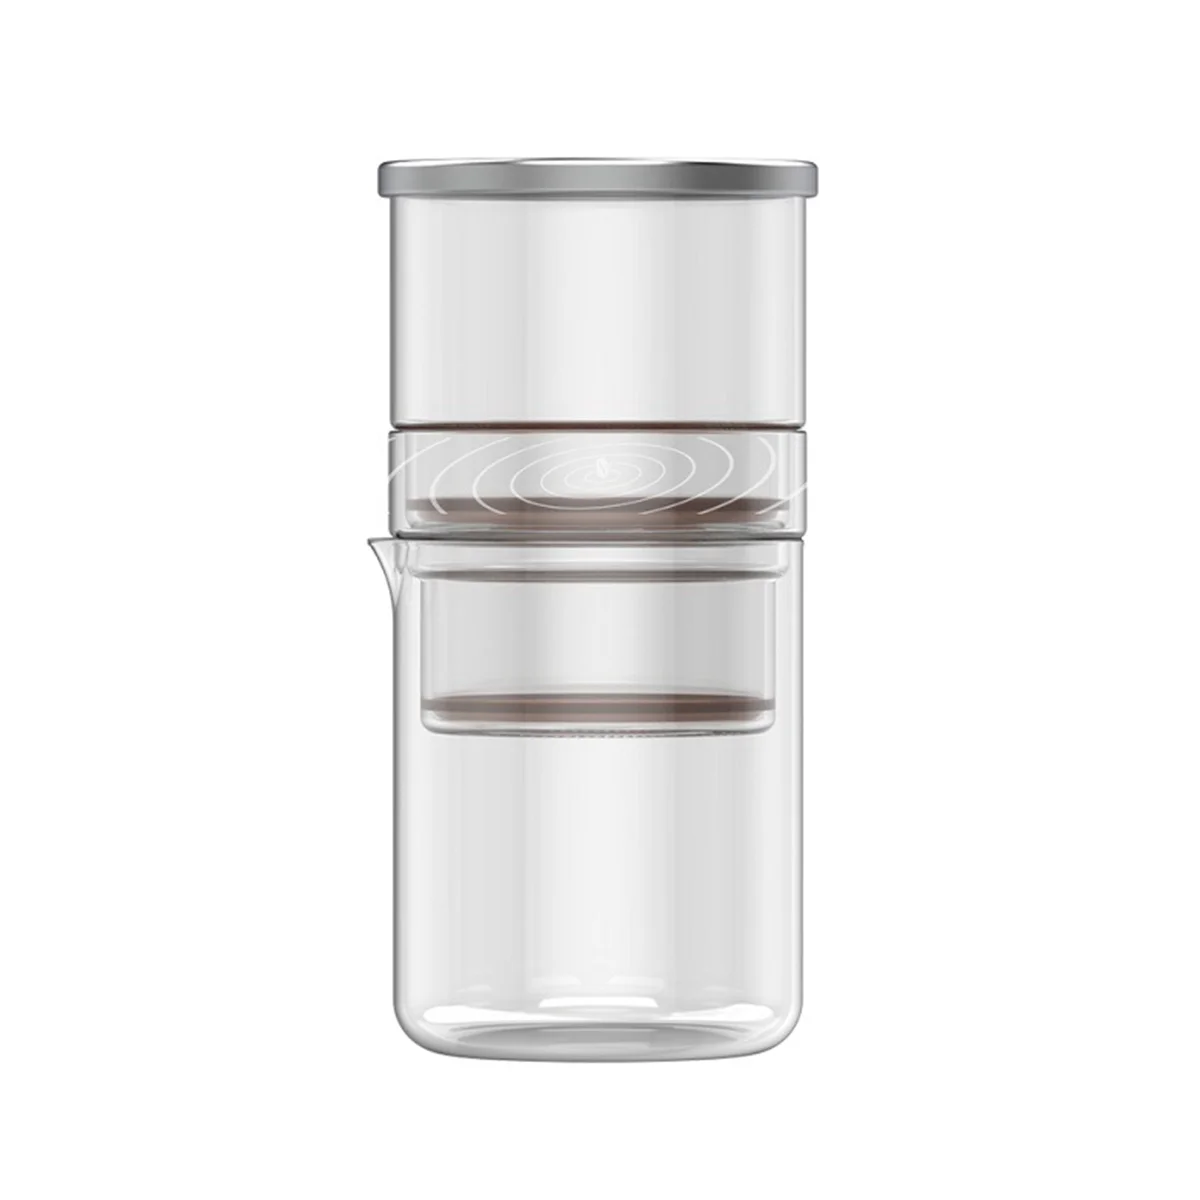 Кофеварка для приготовления капельного кофе без бумаги Портативная кофеварка для приготовления капельного кофе с графином и сетчатым фильтром из нержавеющей стали